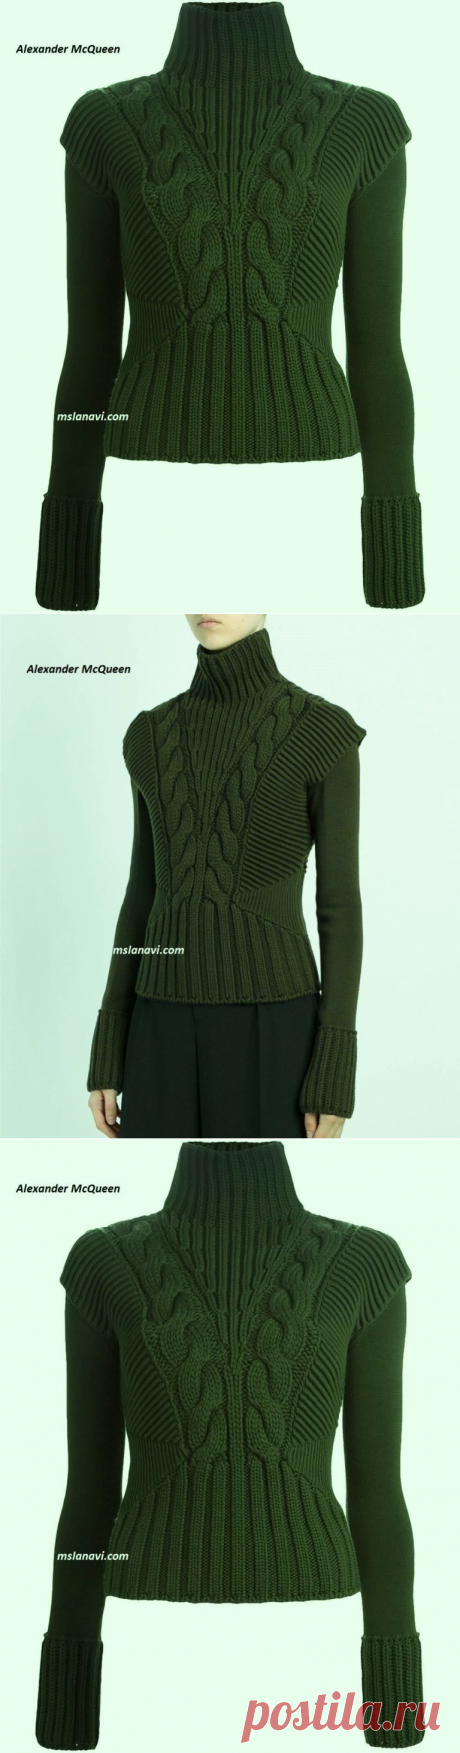 Вязаный свитер спицами от ALEXANDER MCQUEEN - Вяжем с Лана Ви